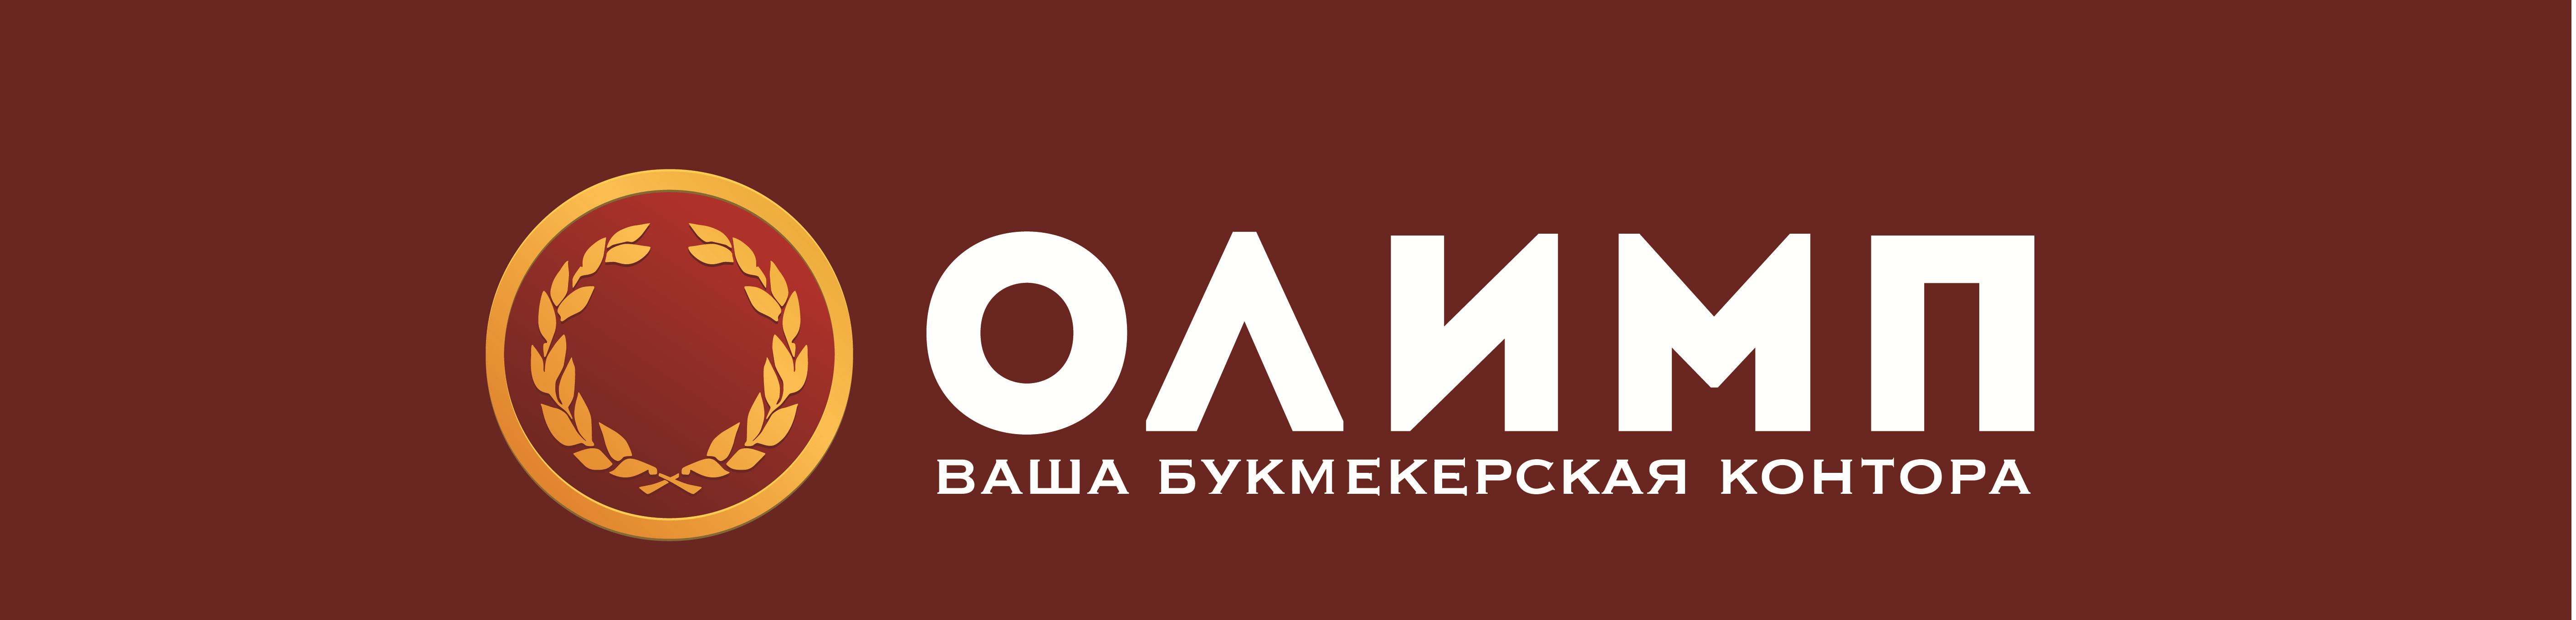 Эмблема Олимп. Отель Олимп логотип. Мир Олимп логотип. Логотип Олимп Киргизия.